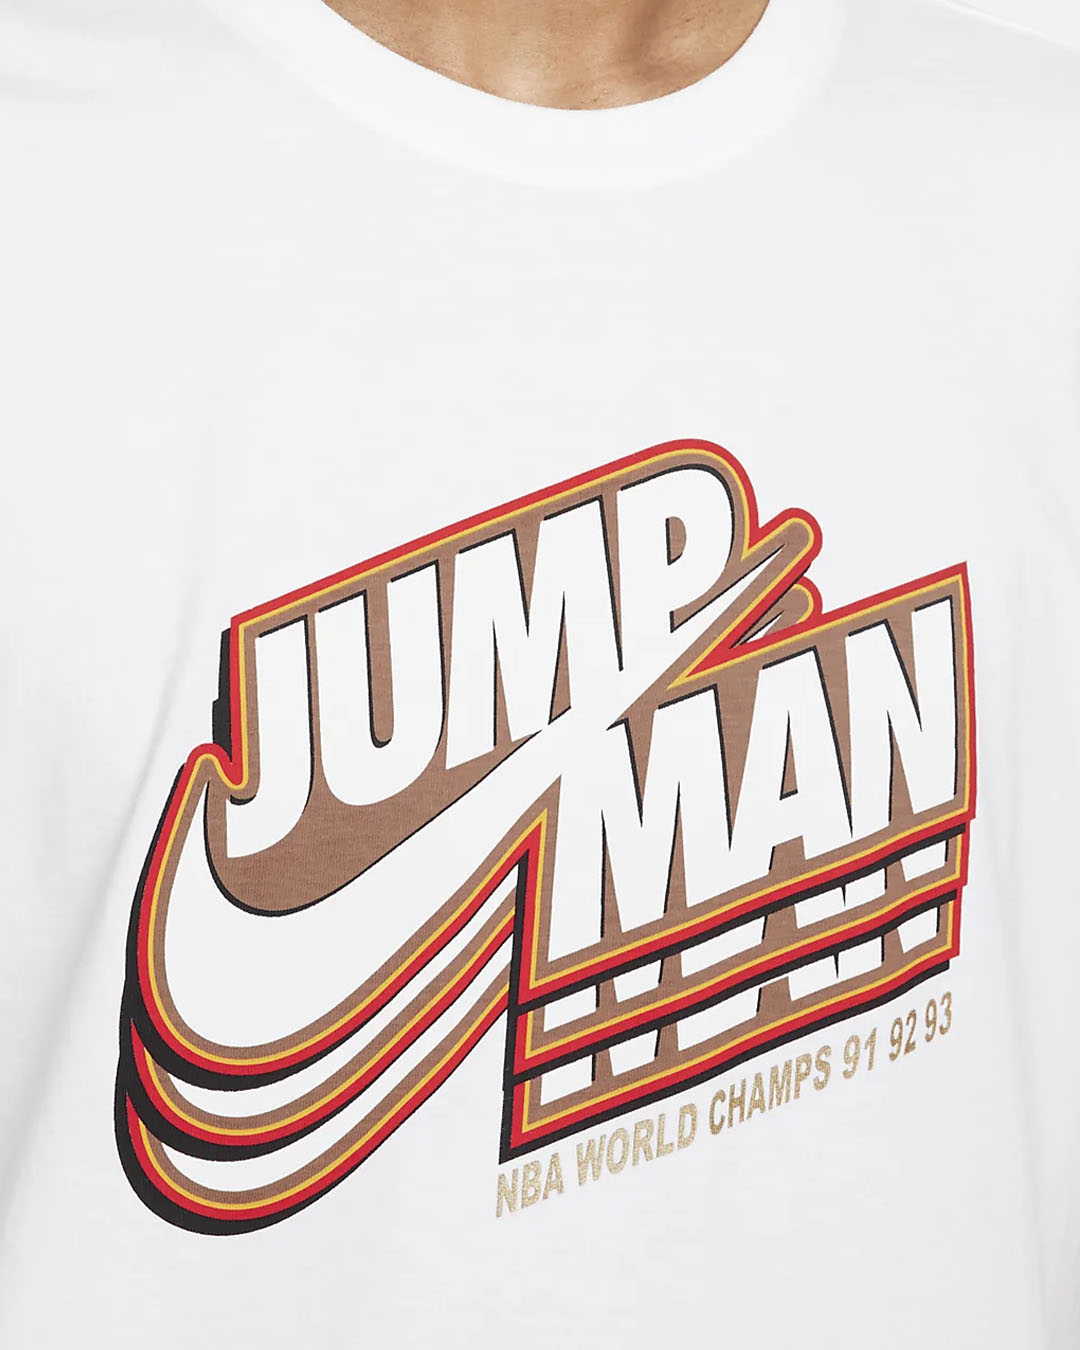 Áo T-shirt nam Nike DC9773-100